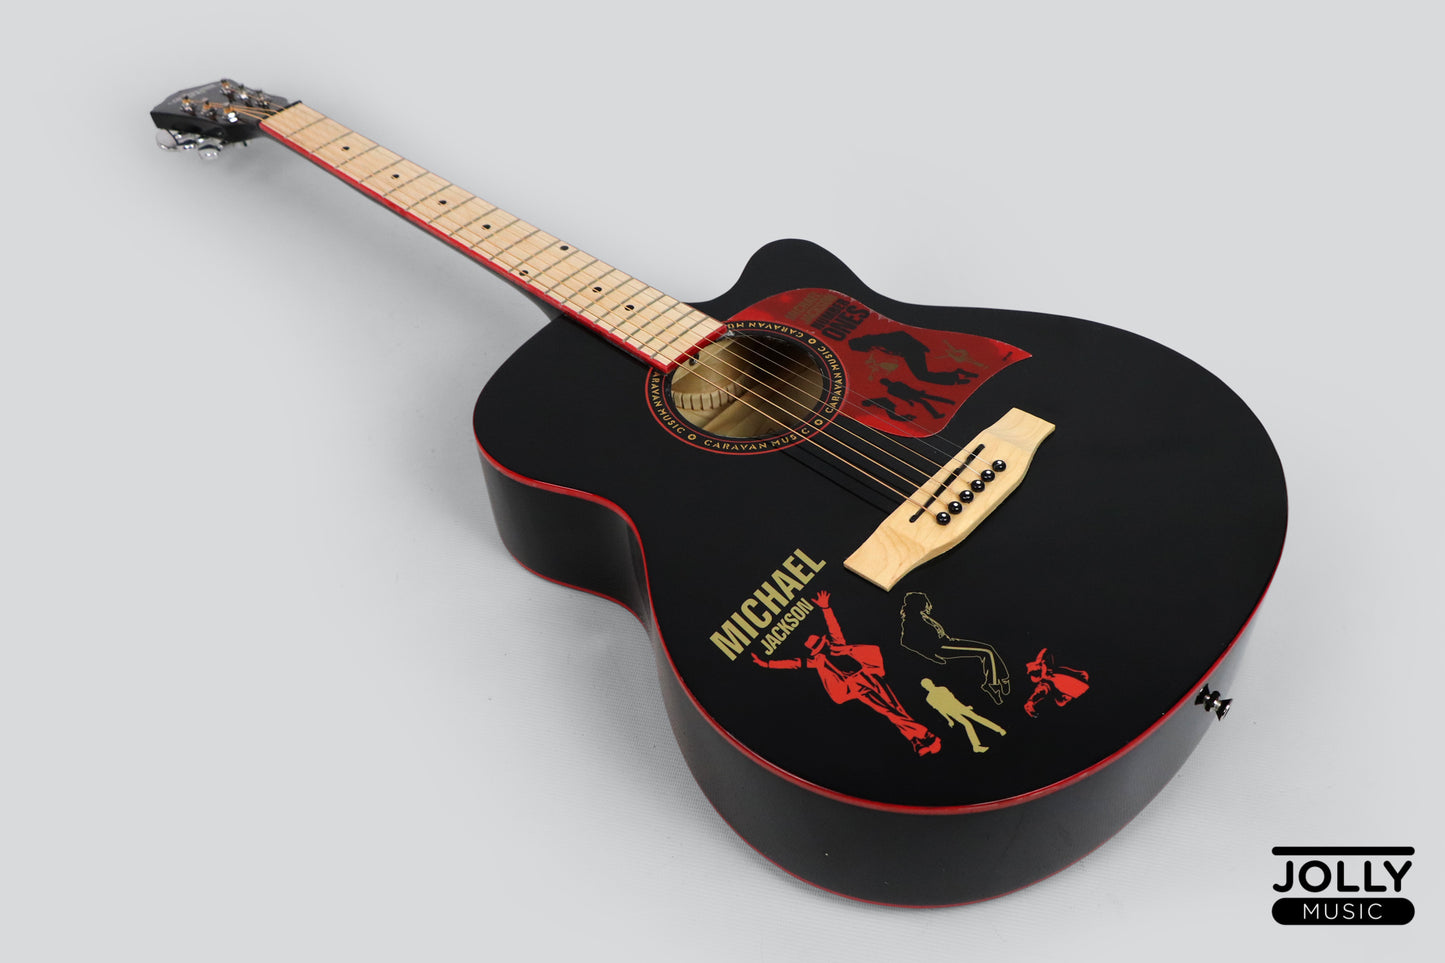 Caravan HS-4015 Acoustic Guitar with Gigbag - Black